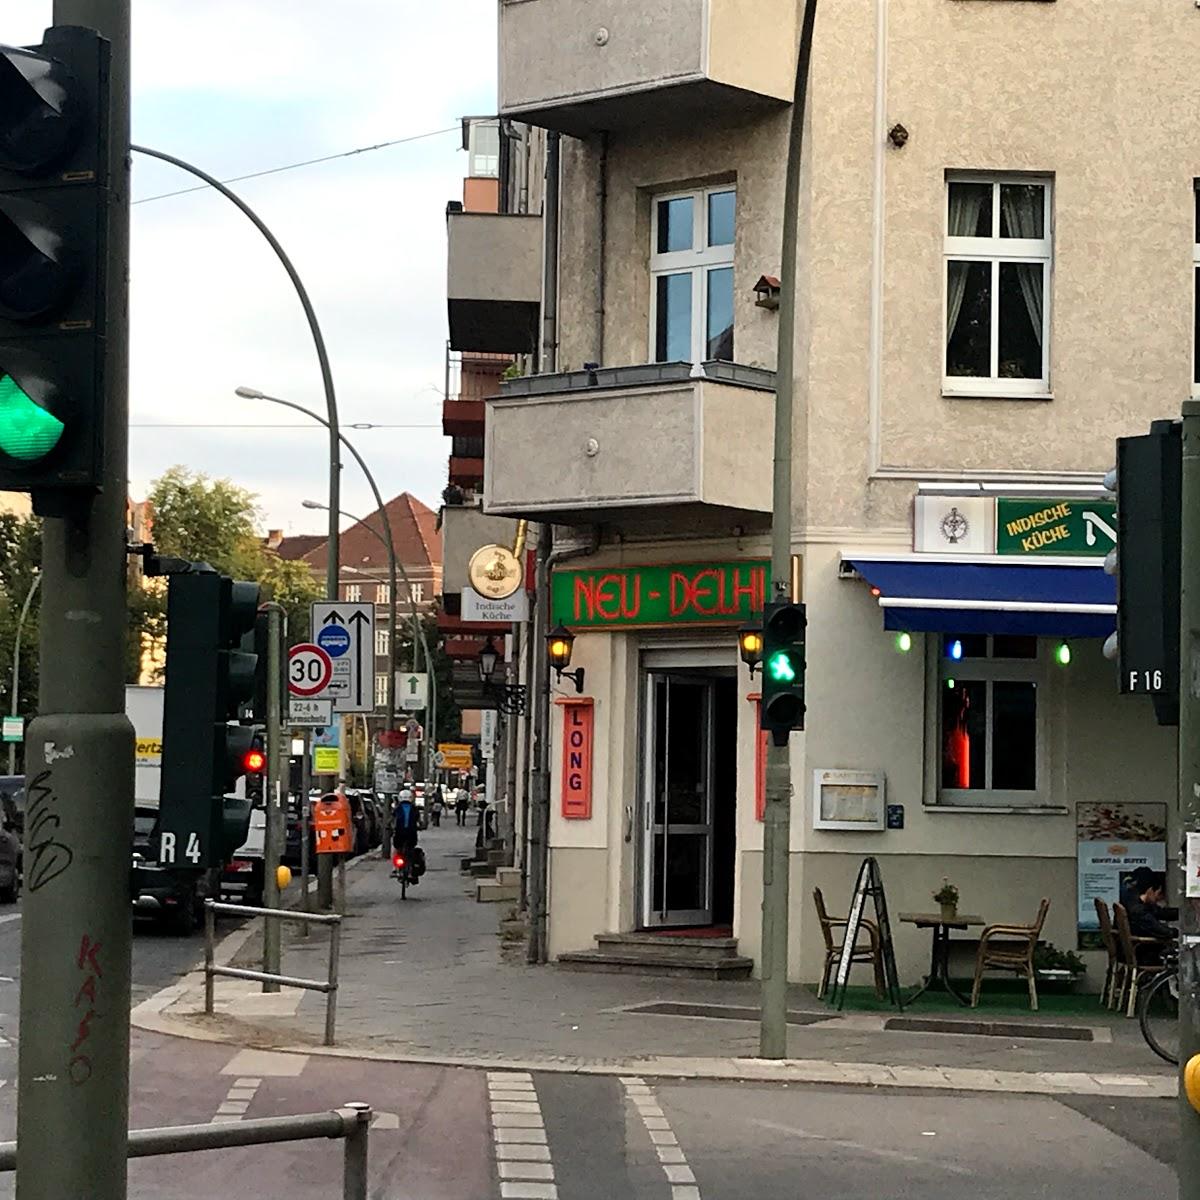 Restaurant "Neu Delhi" in Berlin